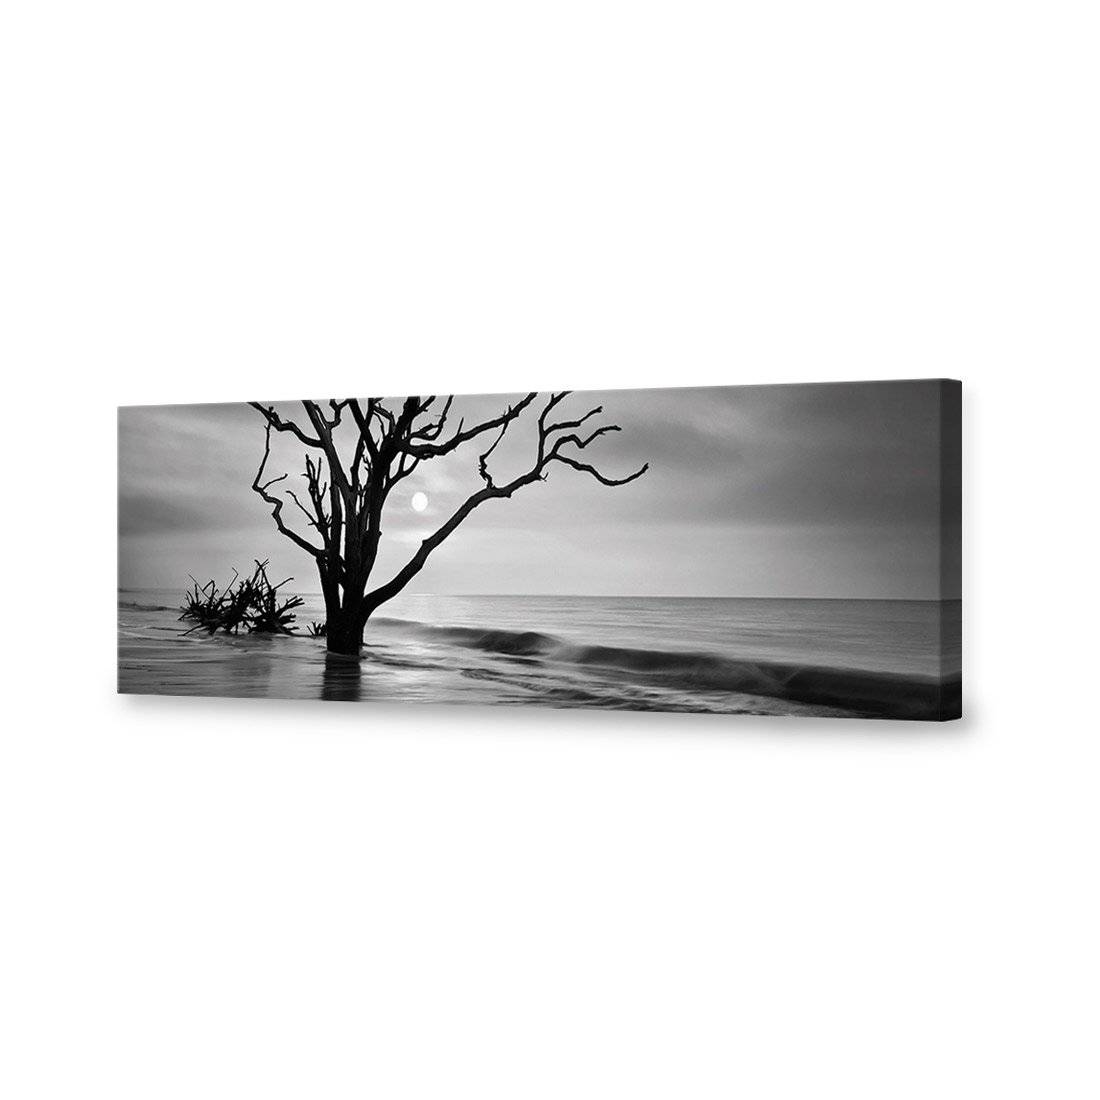 Botany Bay Sunrise, B&W Canvas Art-Canvas-Wall Art Designs-60x20cm-Canvas - No Frame-Wall Art Designs